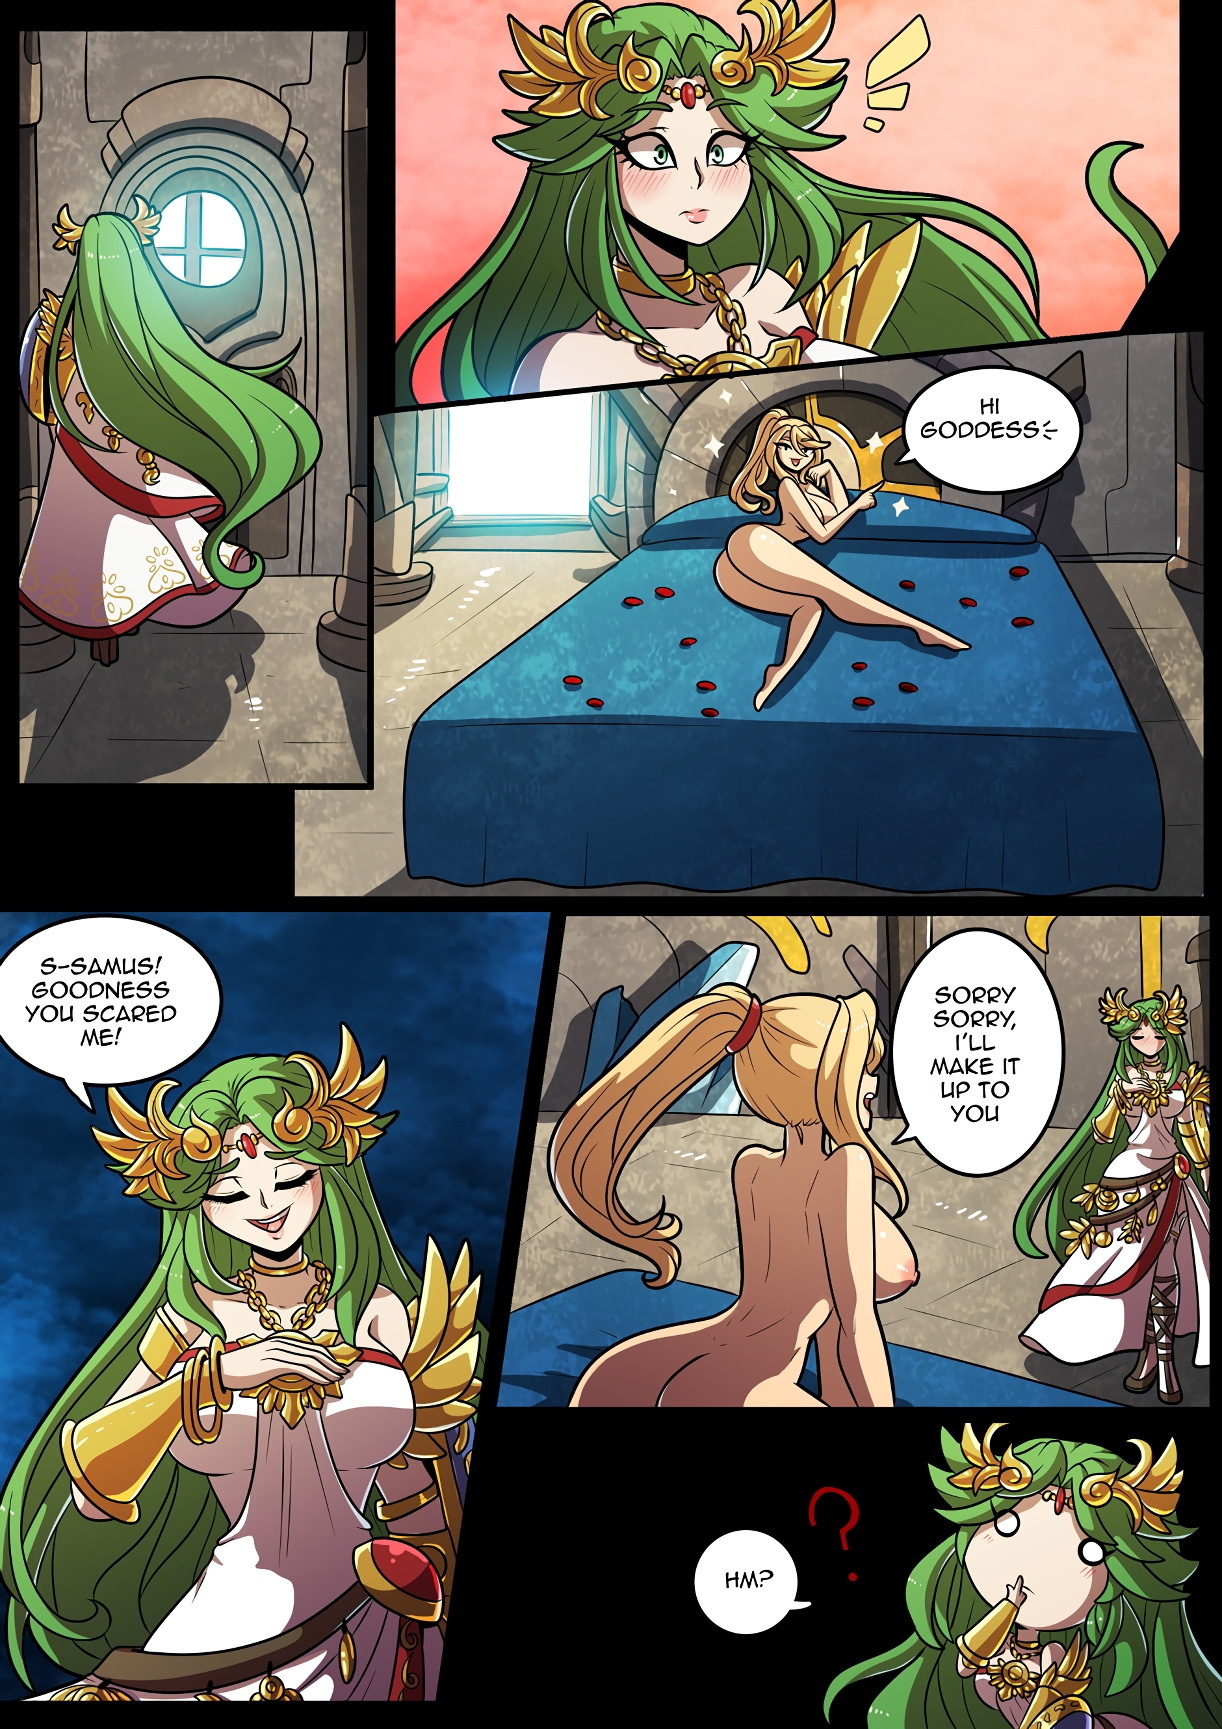 Smash Girls: Samus and Palutena's Bedroom Smash! - Page 2